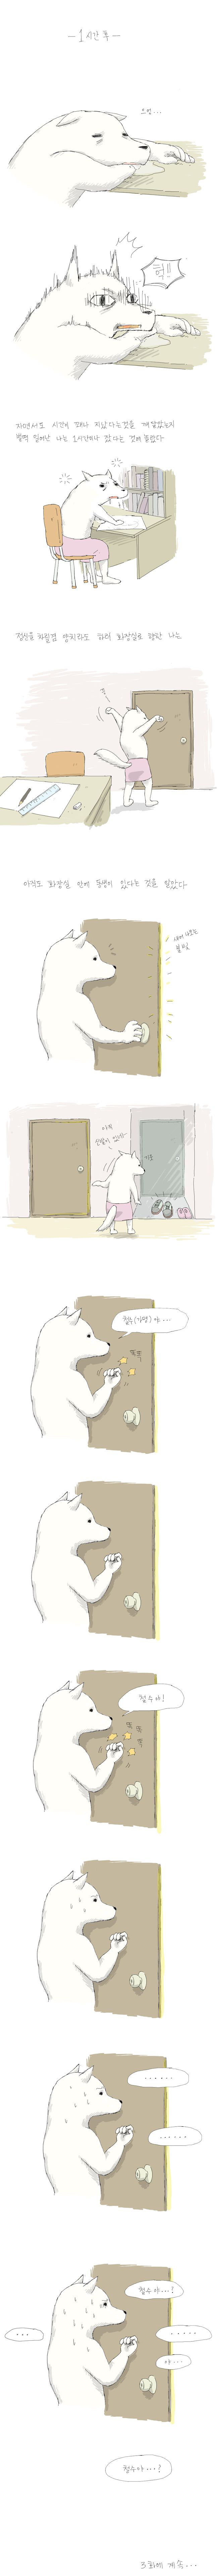 [고전웹툰] 하얀늑대